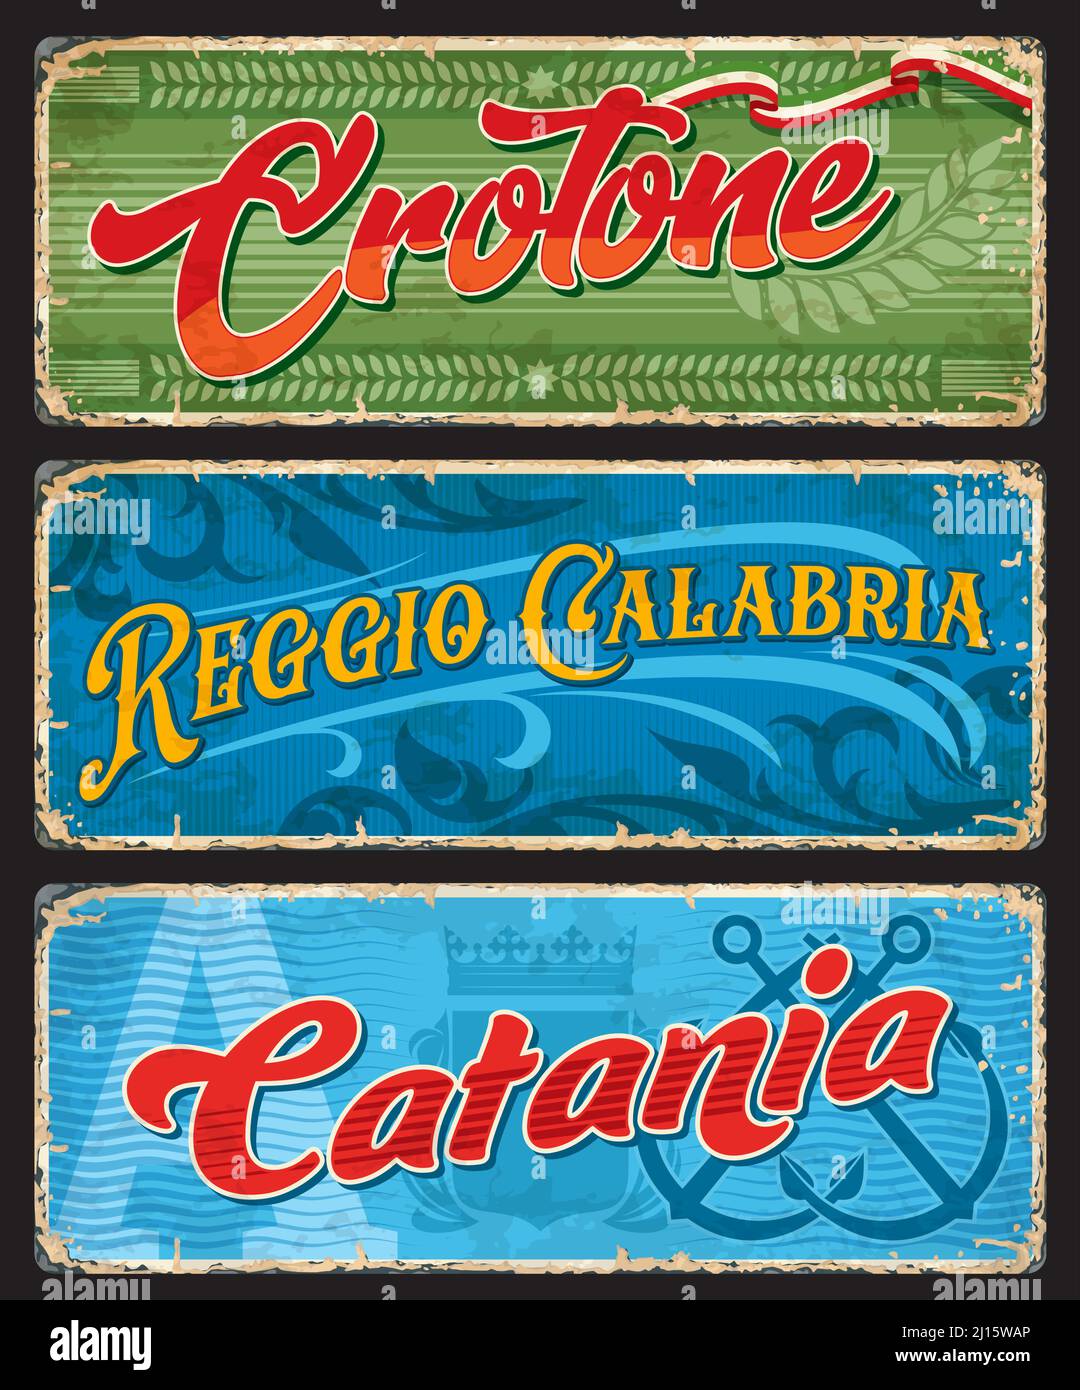 Crotone, Reggio Calabria et Catane étiquettes et plaques de voyage. Les villes italiennes sont des panneaux d'étain ou des bannières vectorielles de grunge. Plaques de la région Europe Travel avec typographie, ornements et armoiries vintage Illustration de Vecteur